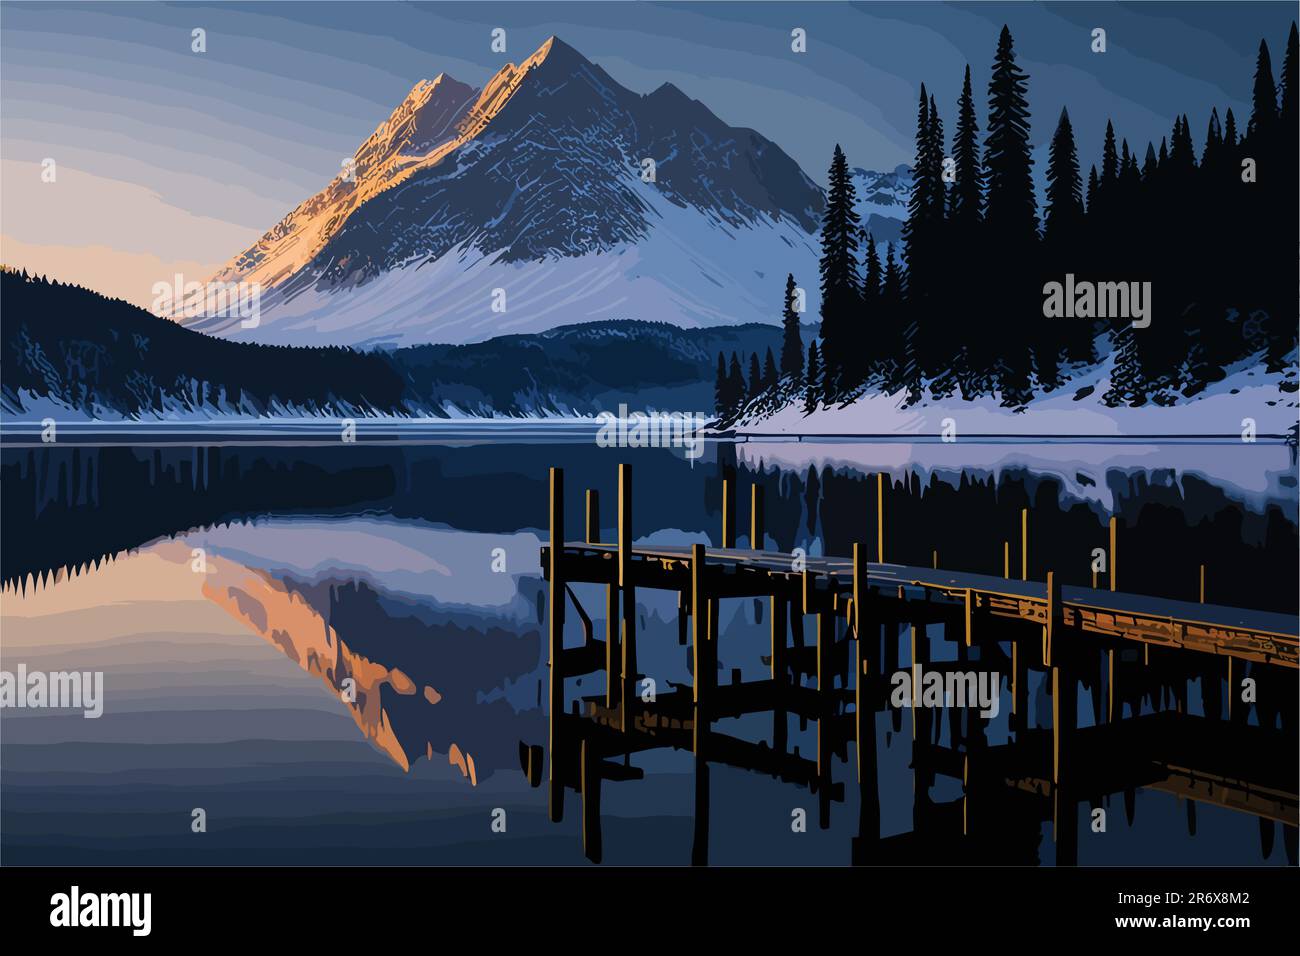 Une scène sereine au bord du lac à l'aube, avec une brume émergeant de l'eau calme, un quai rustique en bois, et un ciel coloré reflétant dans le calme Illustration de Vecteur